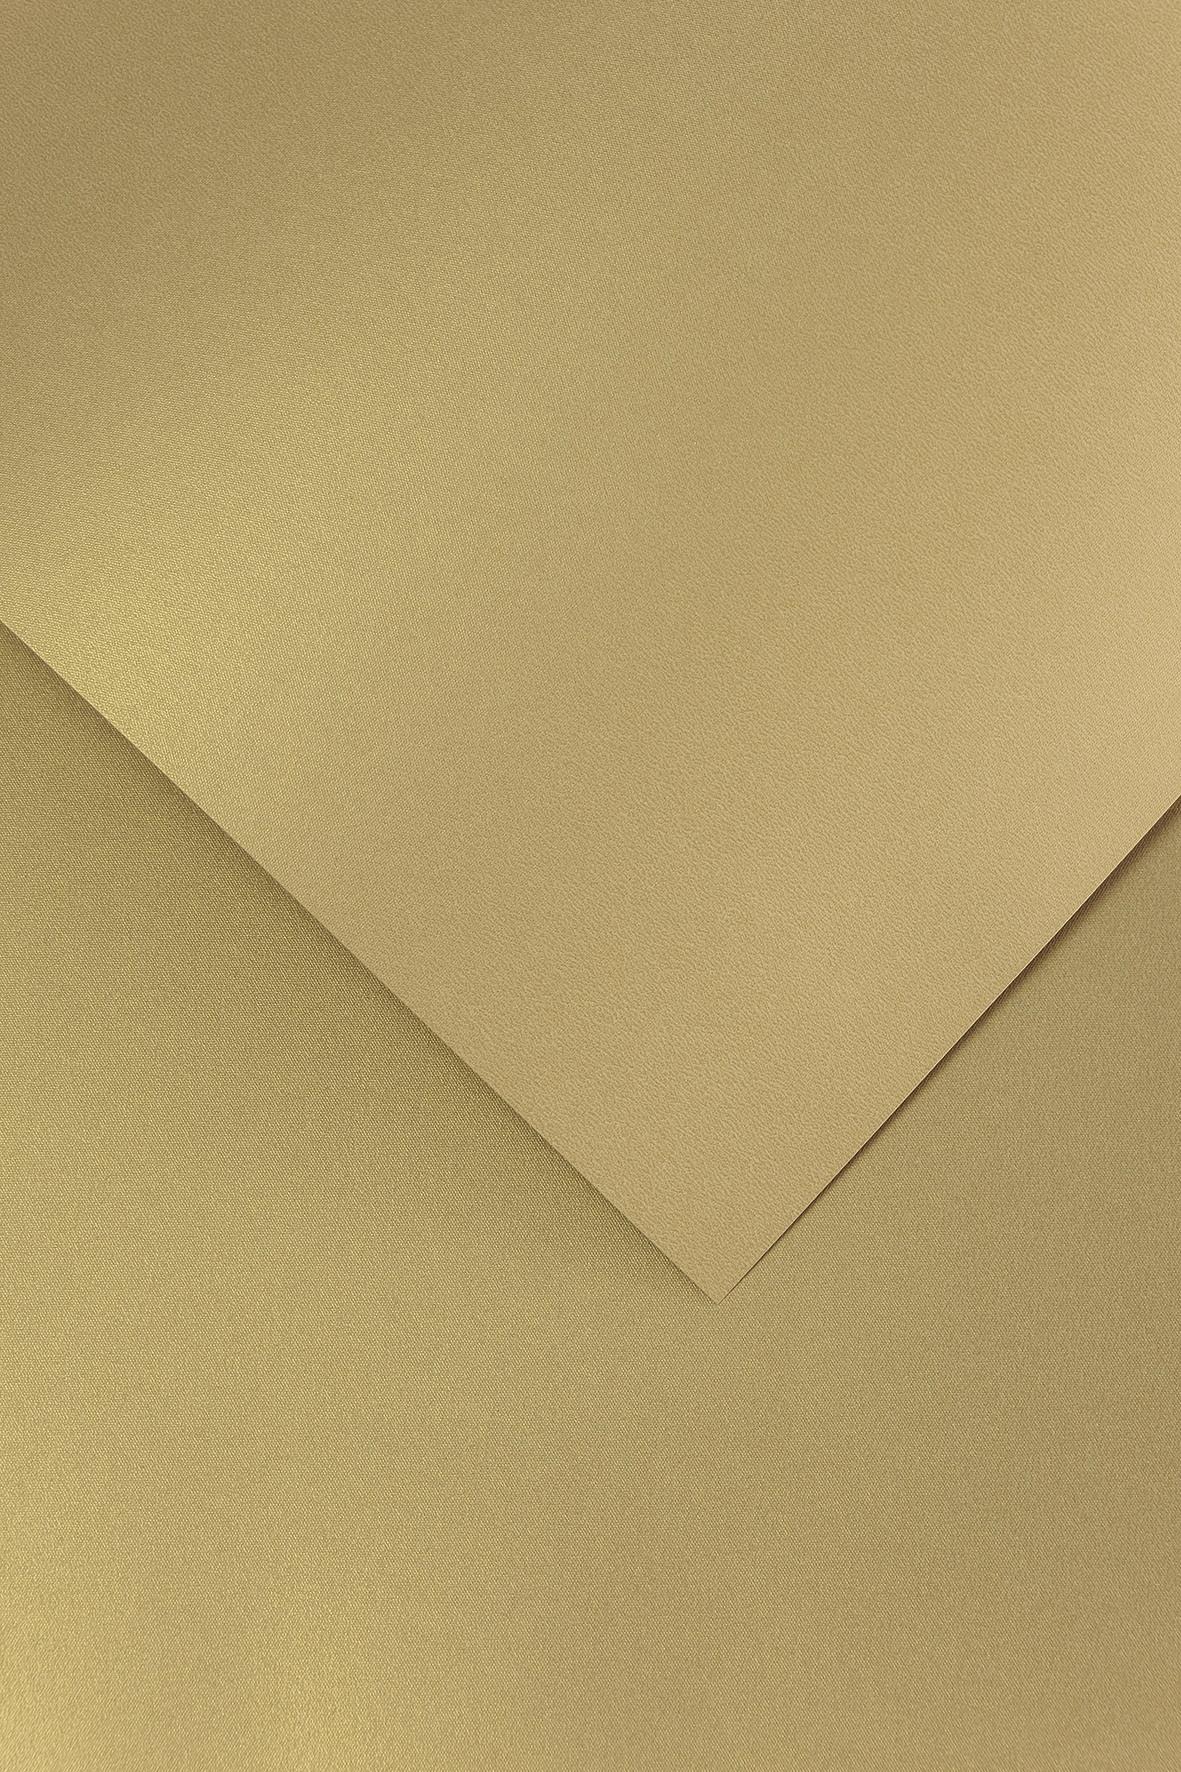 Galeria Papieru ozdobný papír Iceland zlatá 220g, 20ks